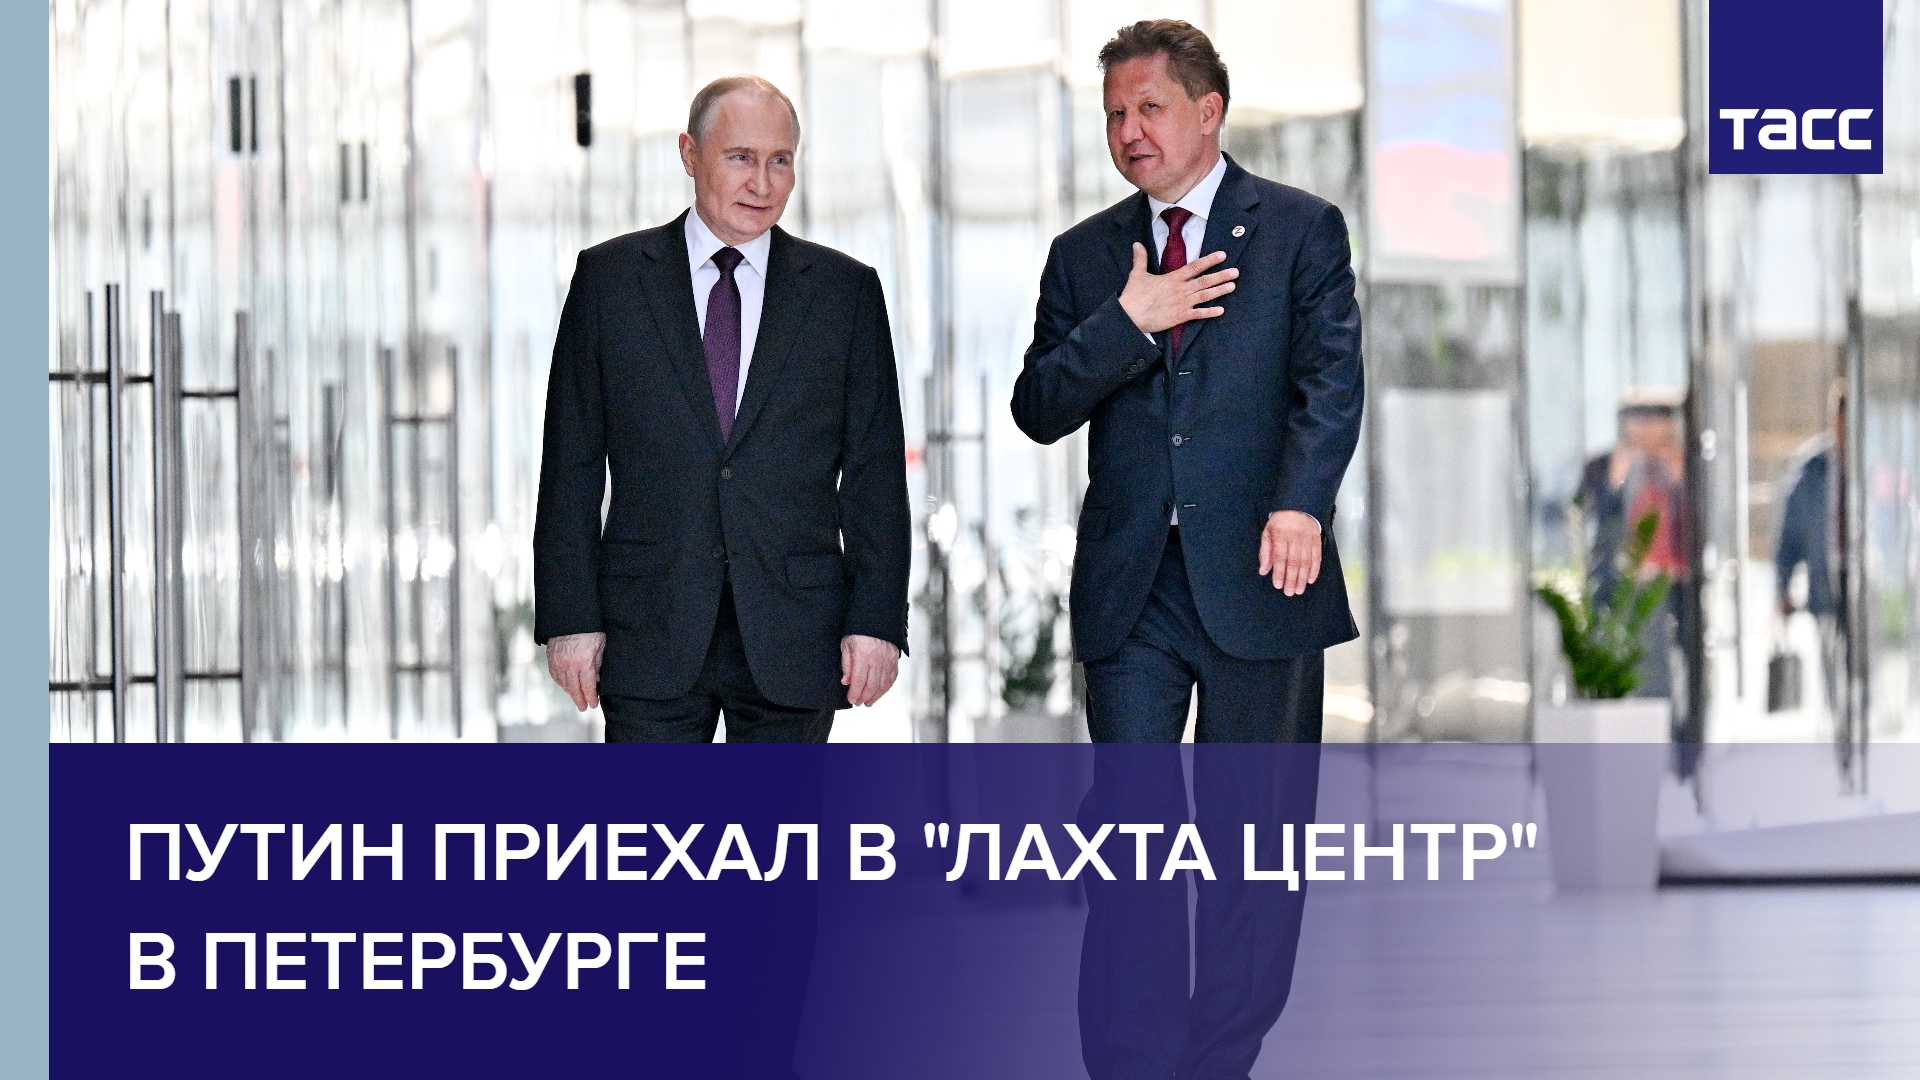 Путин приехал в "Лахта центр" в Петербурге